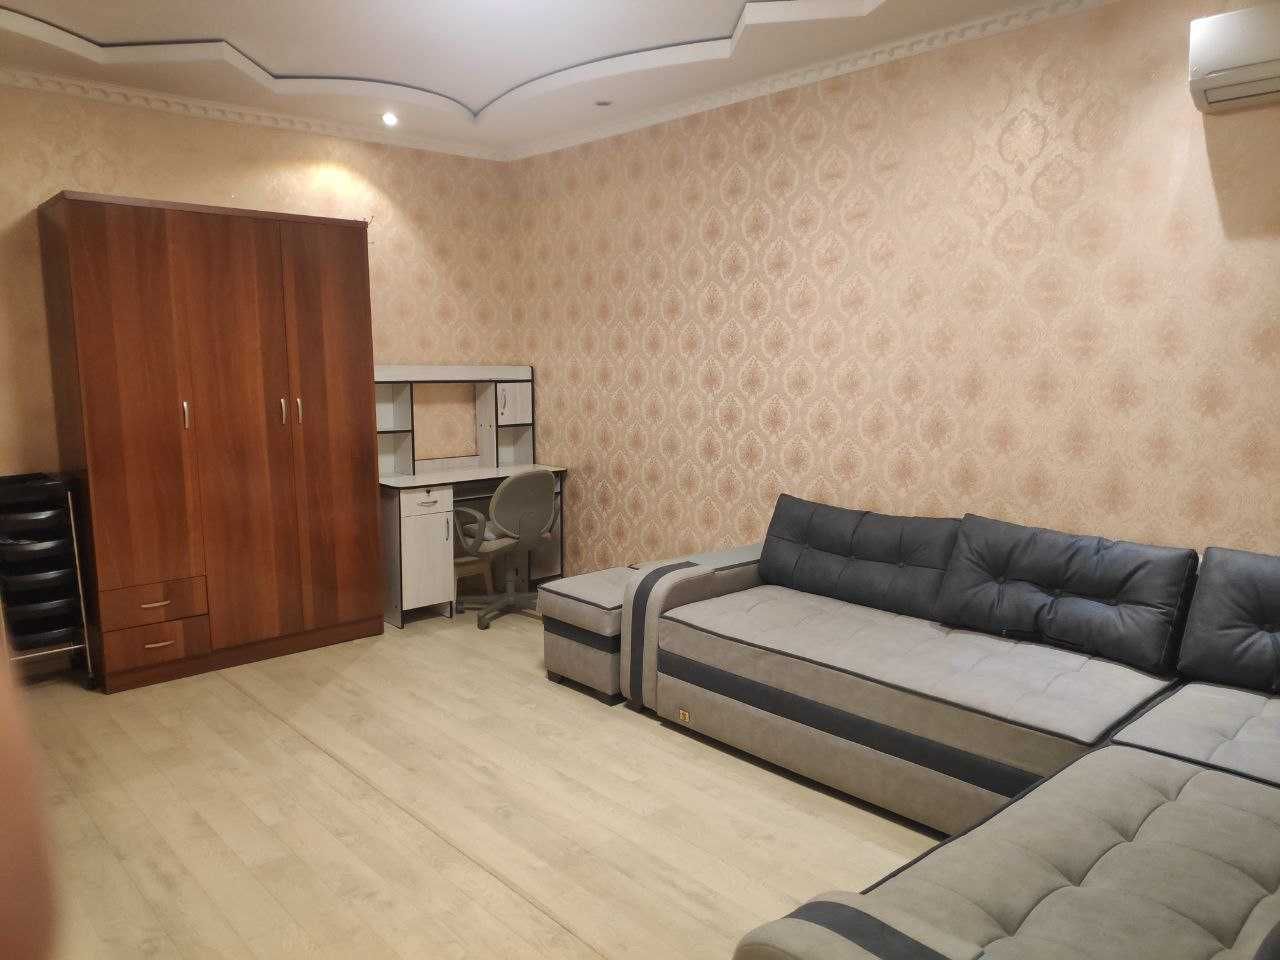 Продаётся 1 комнатная квартира в Шайхантахурском районе (ААА)